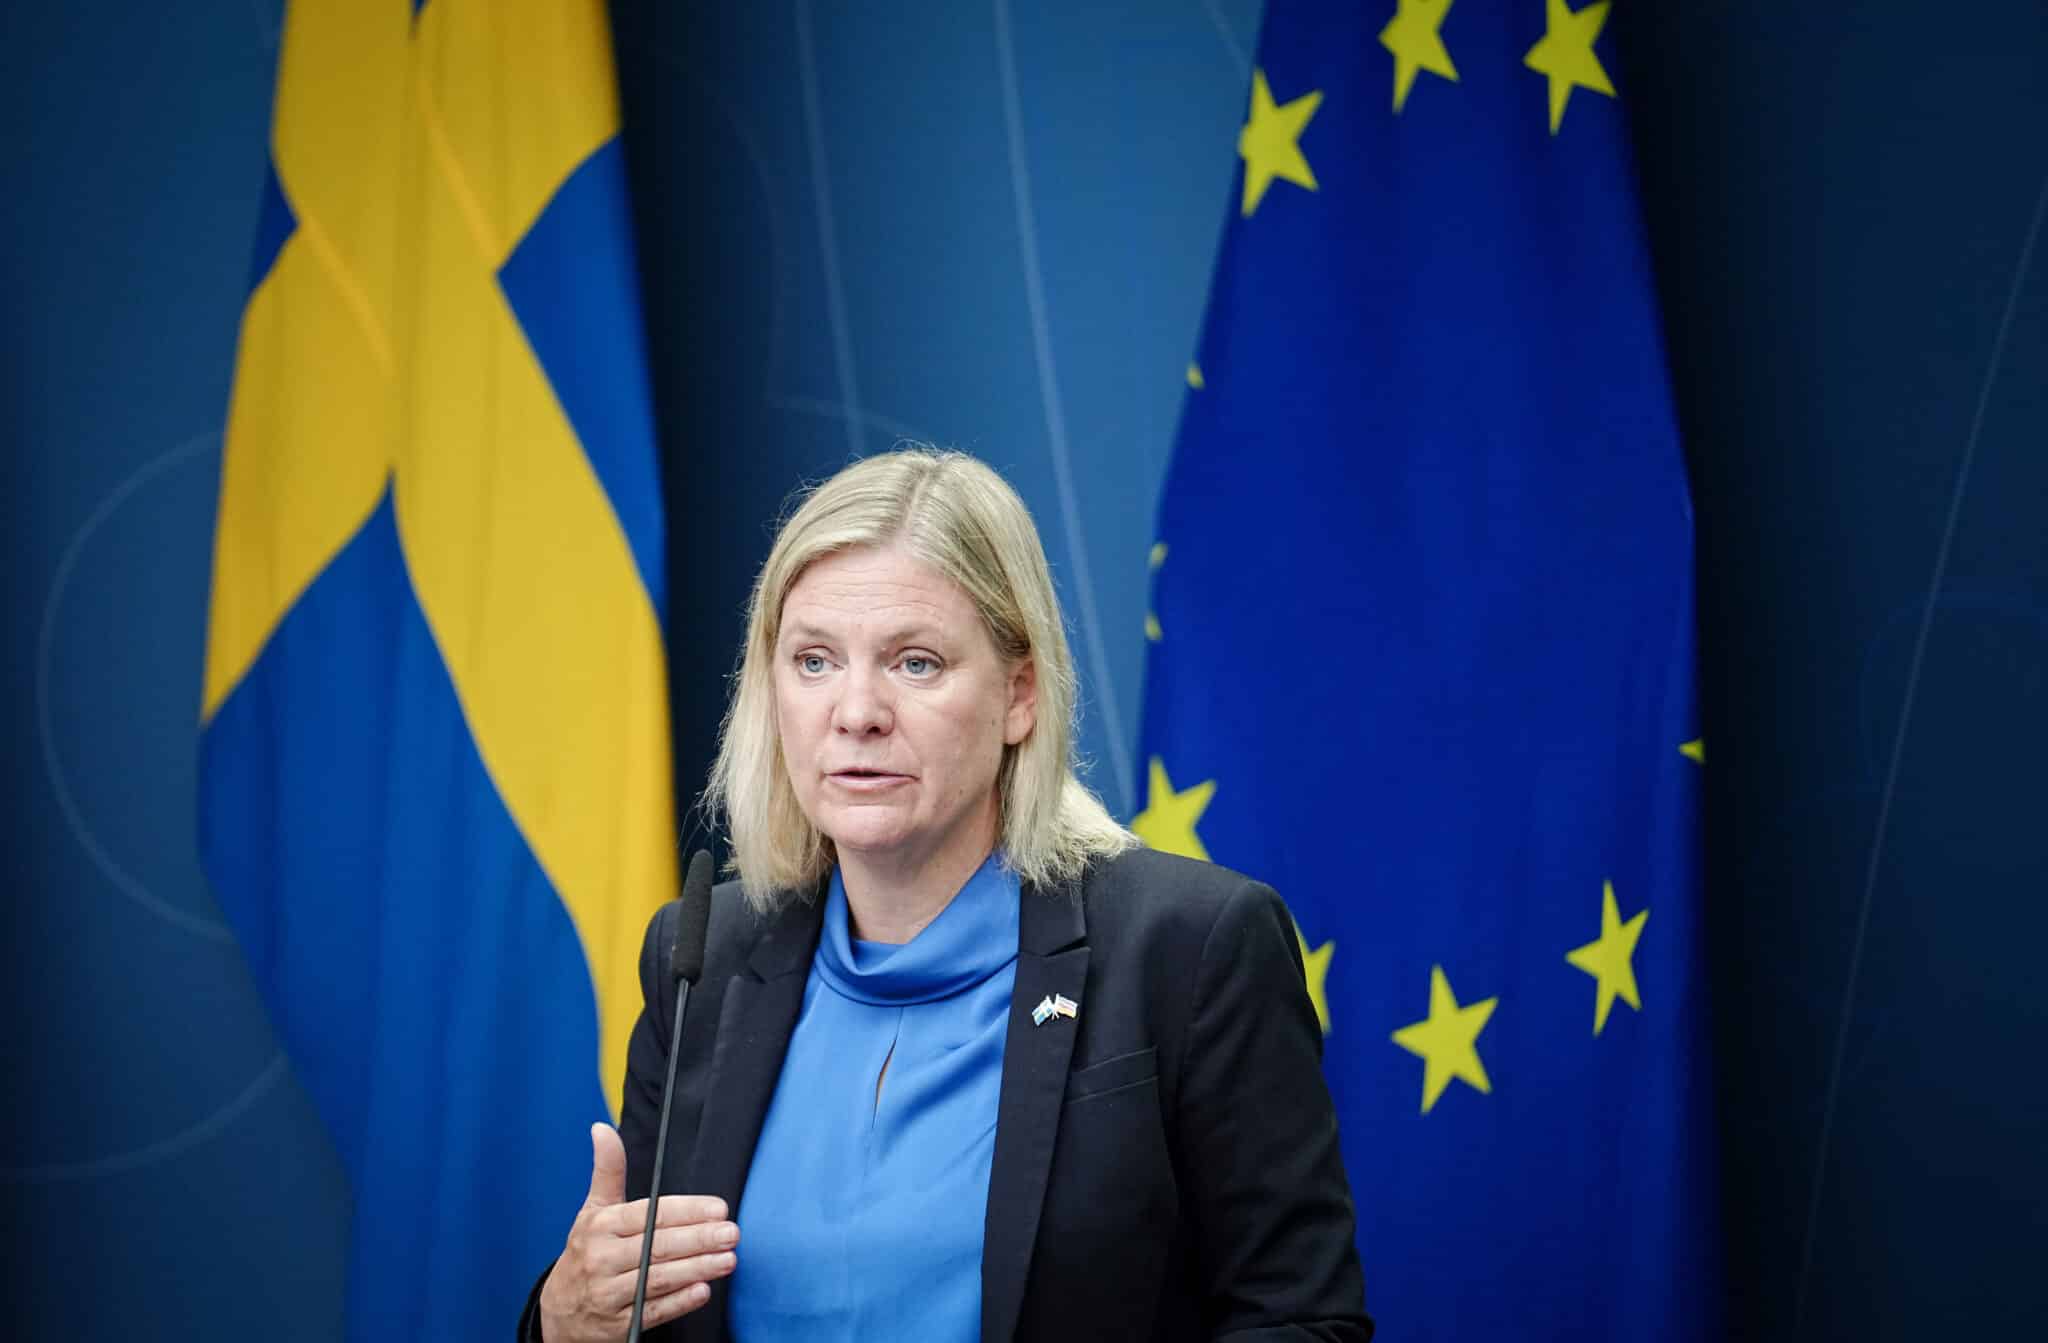 La primera ministra de Suecia dimitirá tras perder elecciones ante la derecha